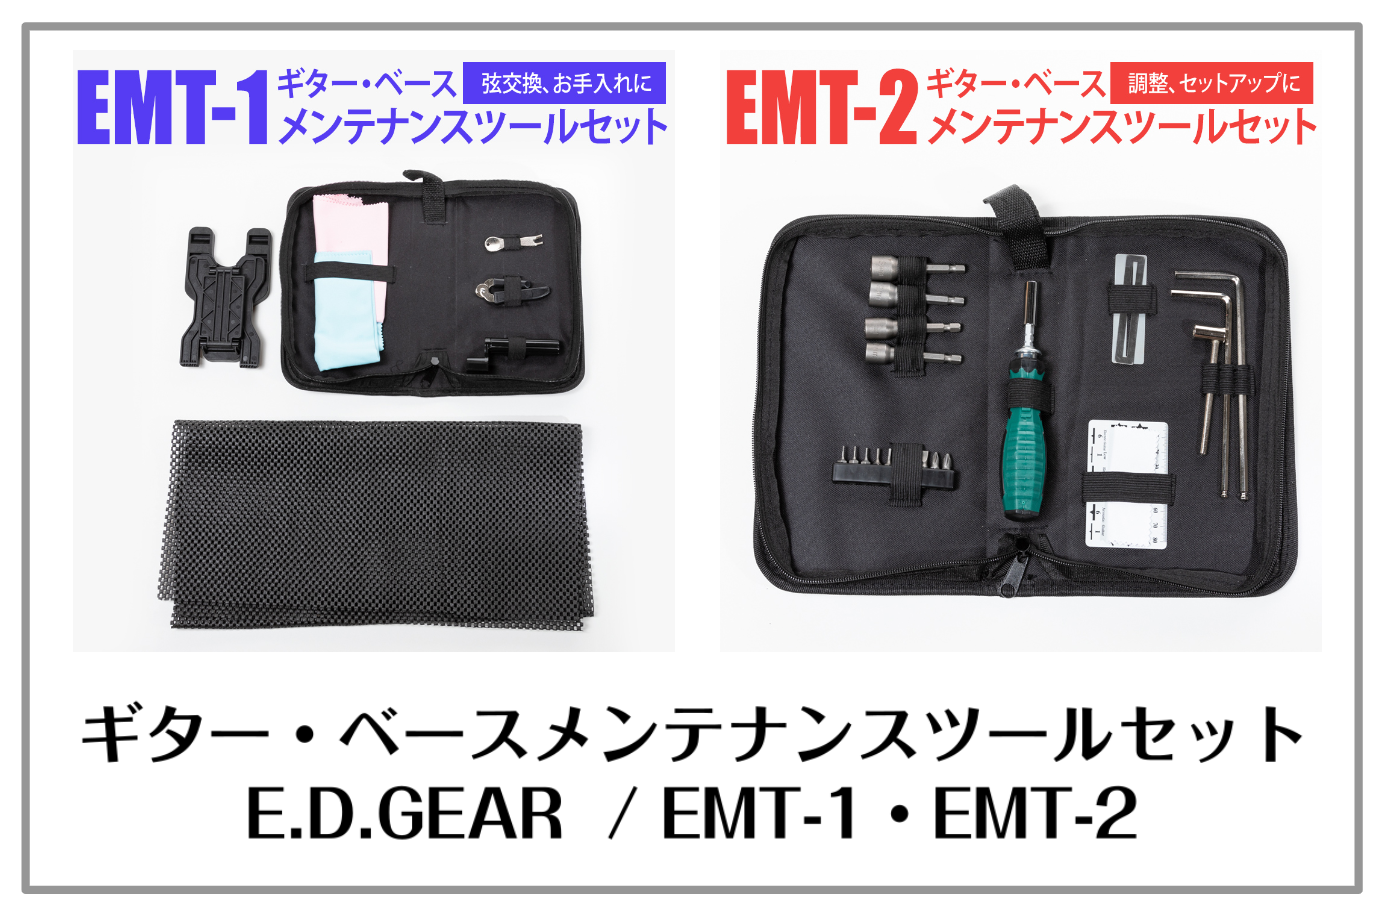 【島村楽器オリジナル】ギター・ベースメンテナンスツールキット発売！ E.D.GEAR EMT-1/EMT-2